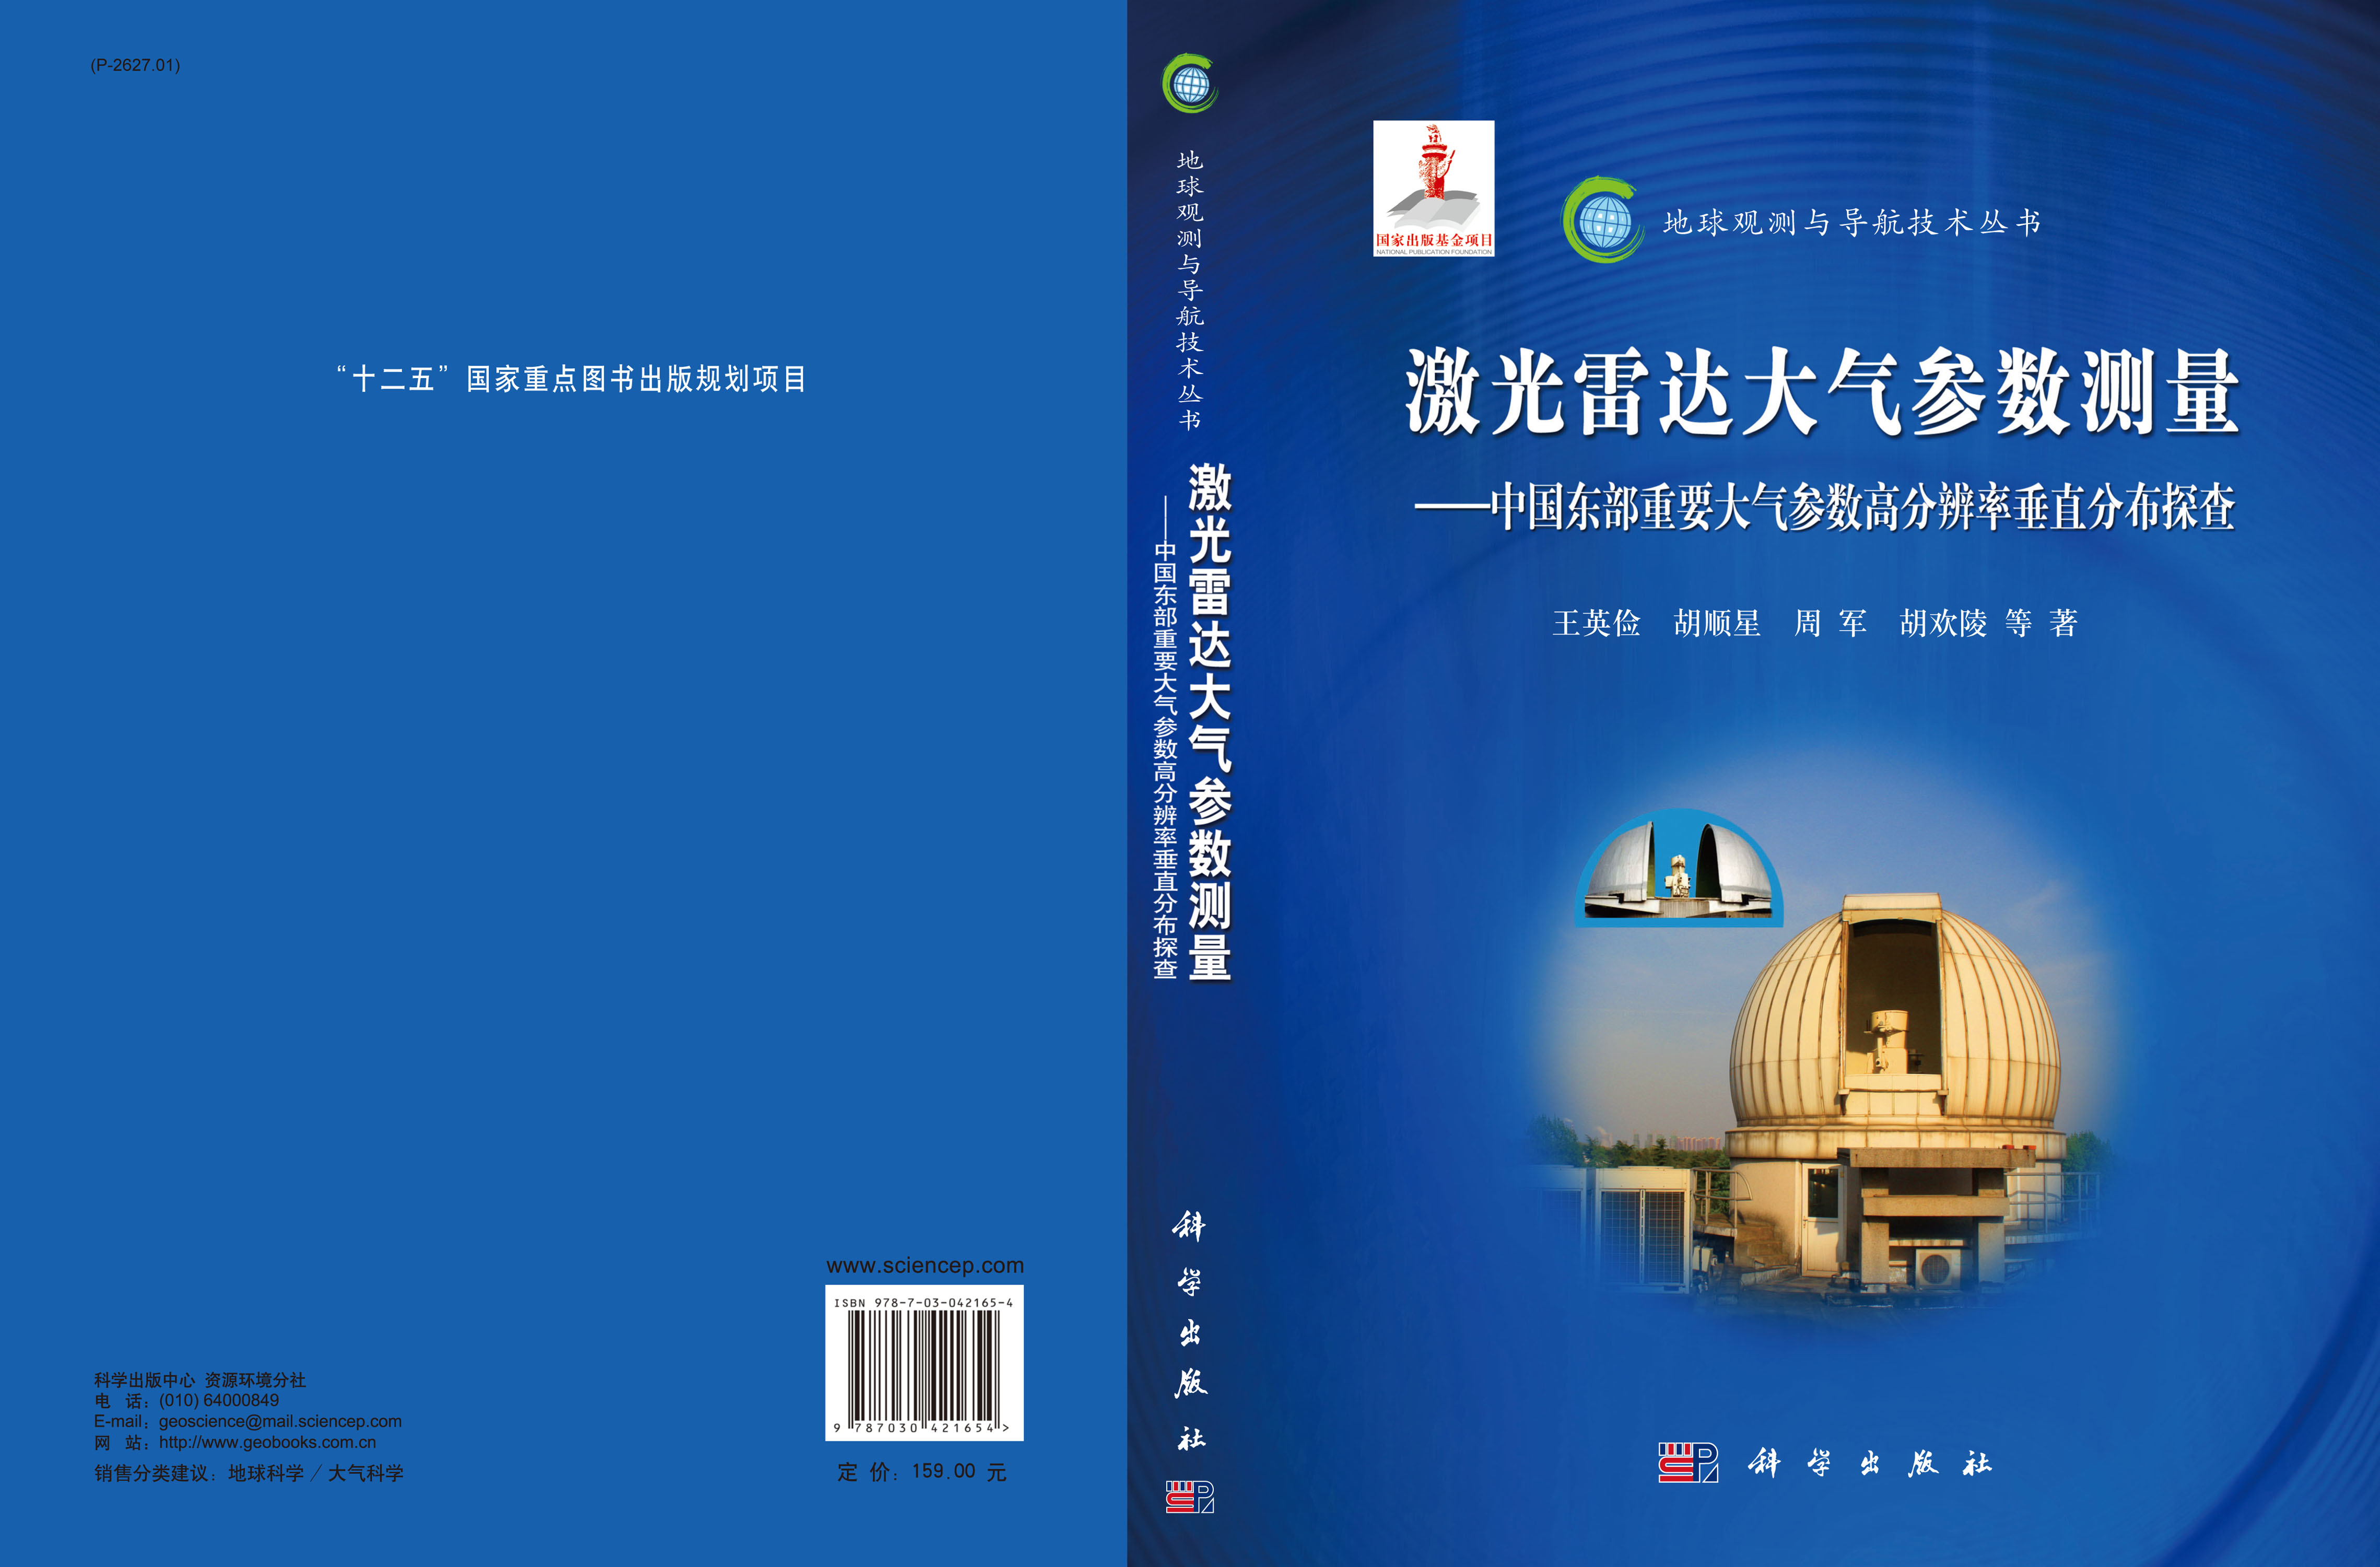 激光雷达大气参数测量――中国东部重要大气参数高分辨率垂直分布探查